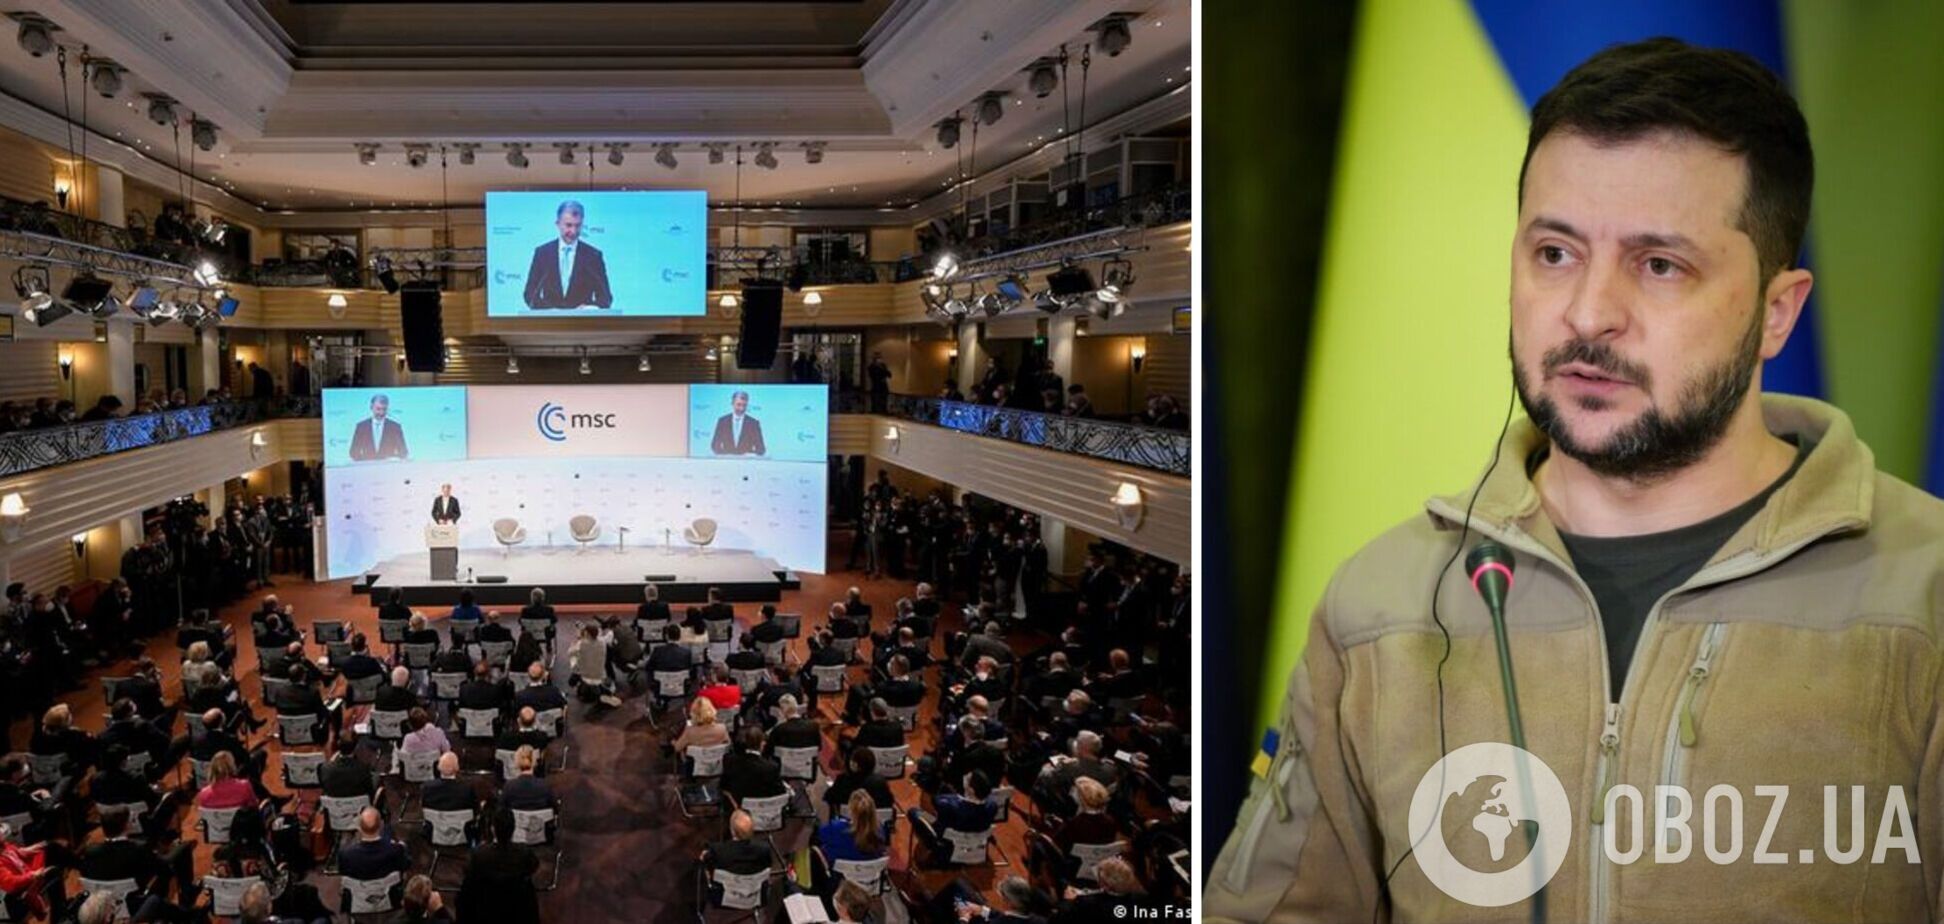 'Украинской победе нет альтернативы': Зеленский на Мюнхенской конференции сравнил Украину с Давидом и призвал остановить РФ